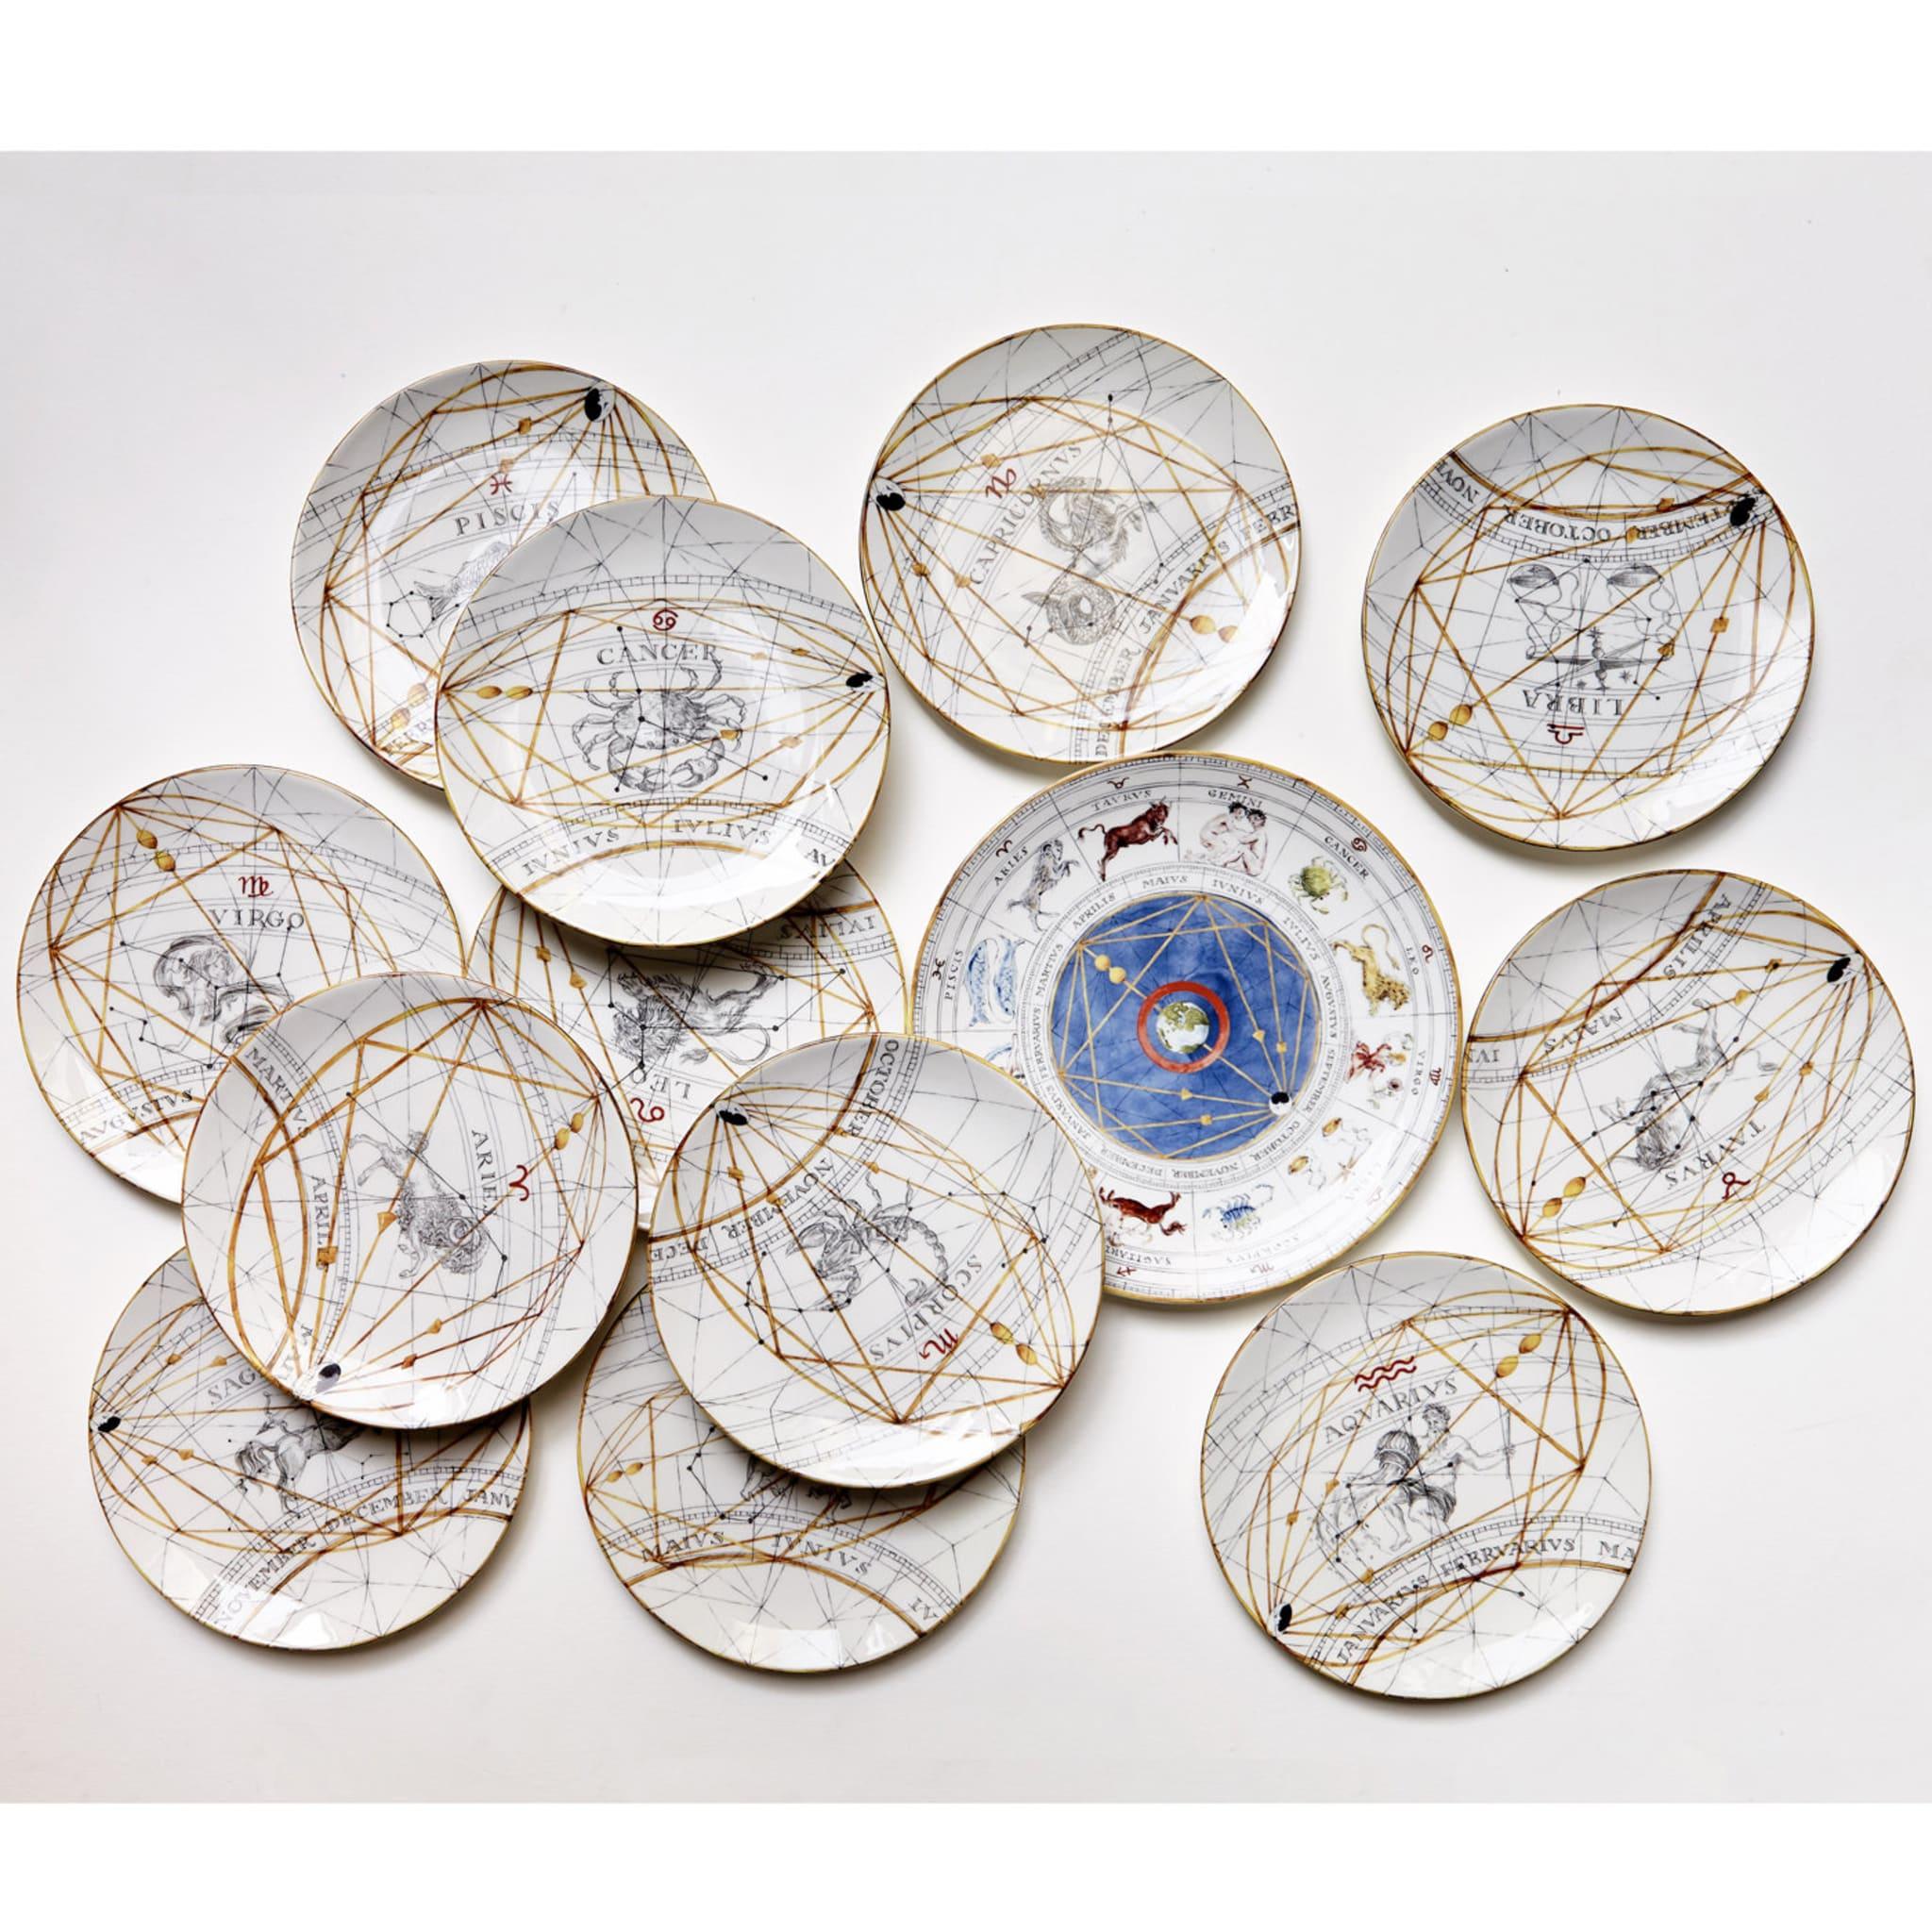 Dieser herrliche Keramikteller ist Teil der Kollektion Zodiaco, die auf der Mailänder Möbelmesse 2017 vorgestellt wurde. Die Mitte dieser Schale ist mit einem blauen Kreis verziert, der die Erde umschließt und mit goldenen Linien die zwölf